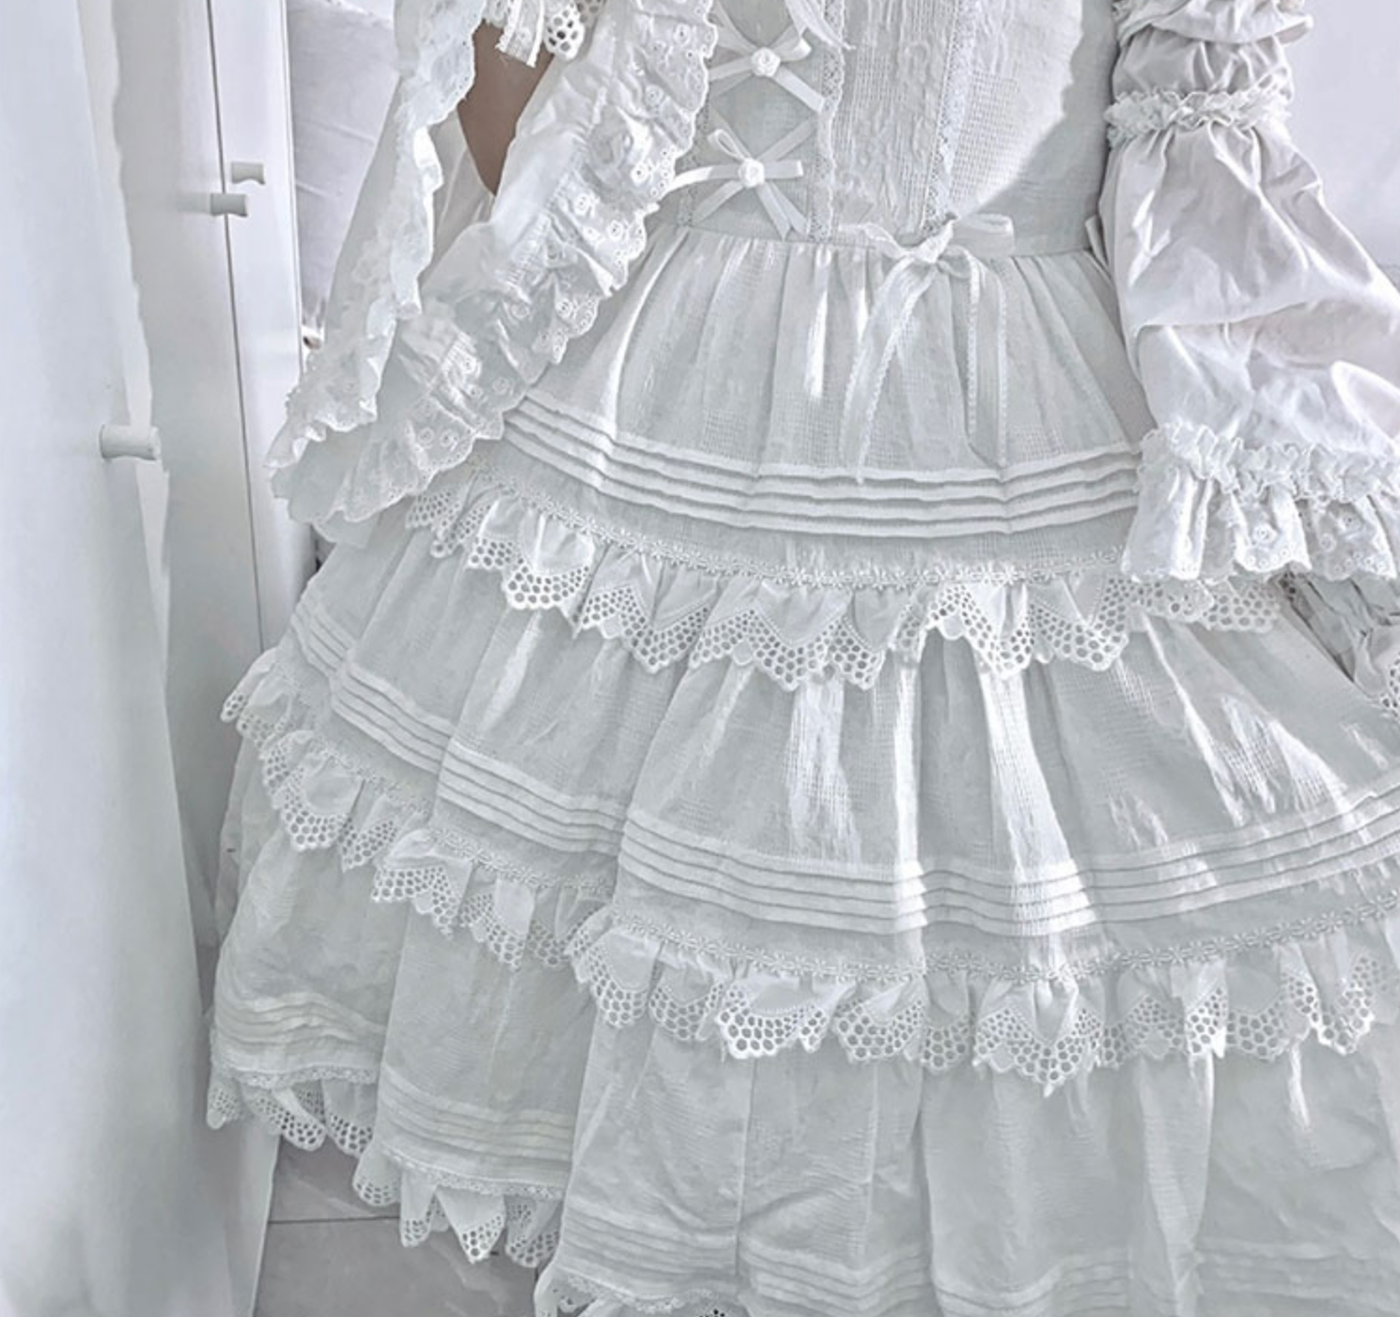 (BFM)LittleFairyTale~Cotton Lolita Dress Summer Jumper Skirt   